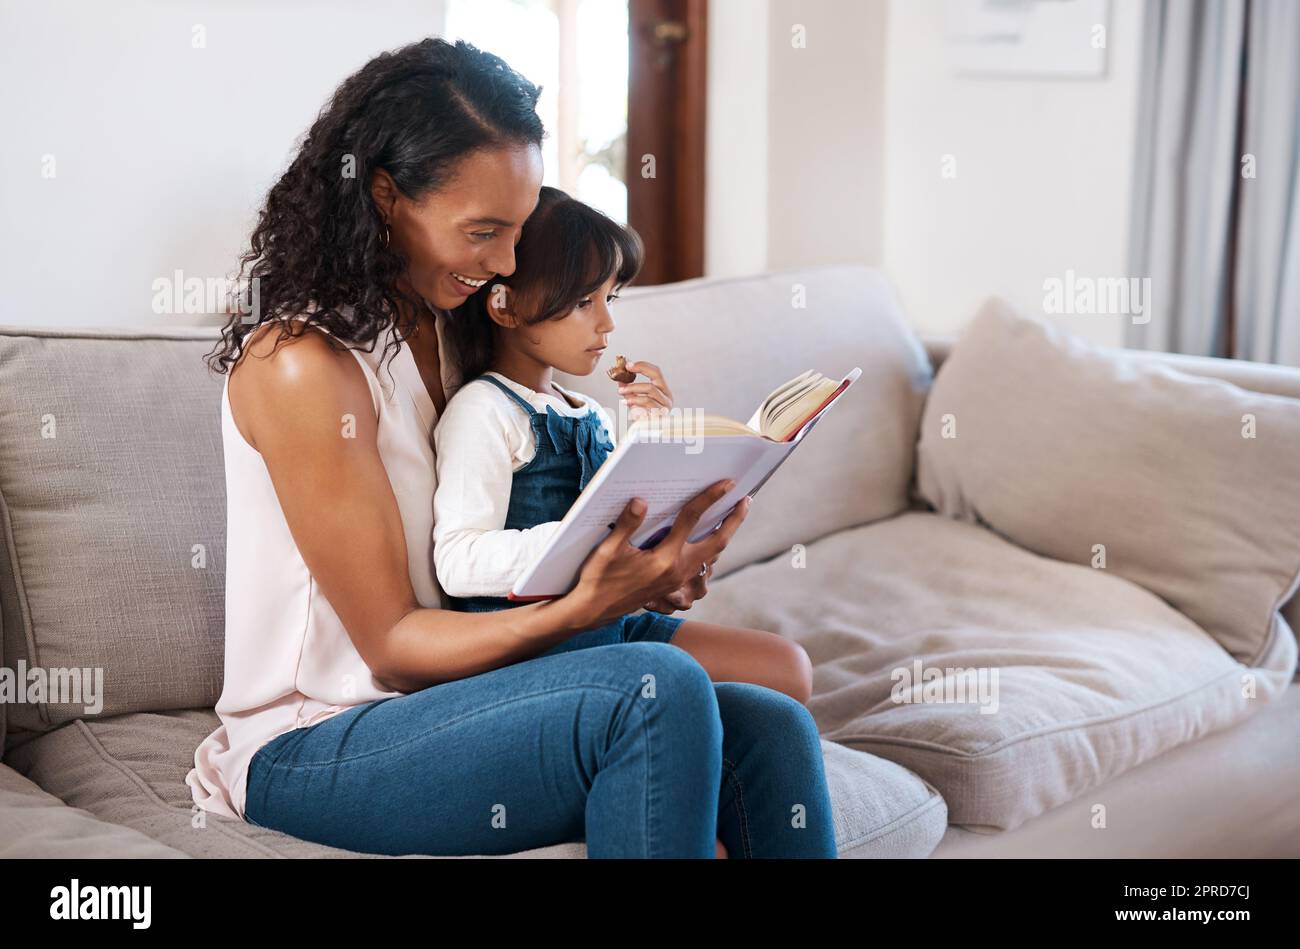 Bonding Time beinhaltet das Lesen unserer Lieblingsbücher. Ein junges Mädchen, das ein Buch liest, während es mit ihrer Mutter zu Hause sitzt. Stockfoto